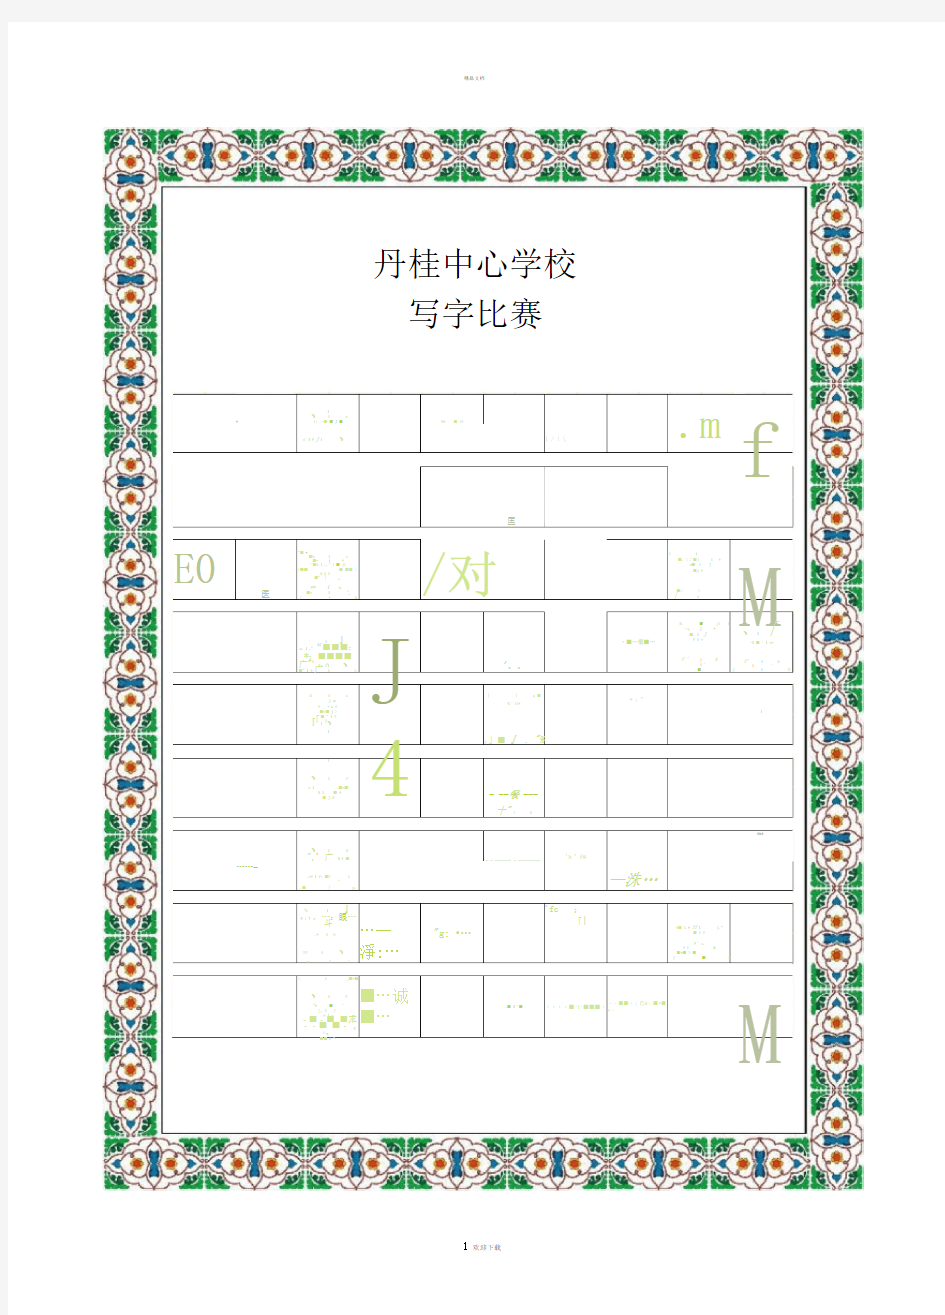 书法比赛专用纸(精美田字格)99352